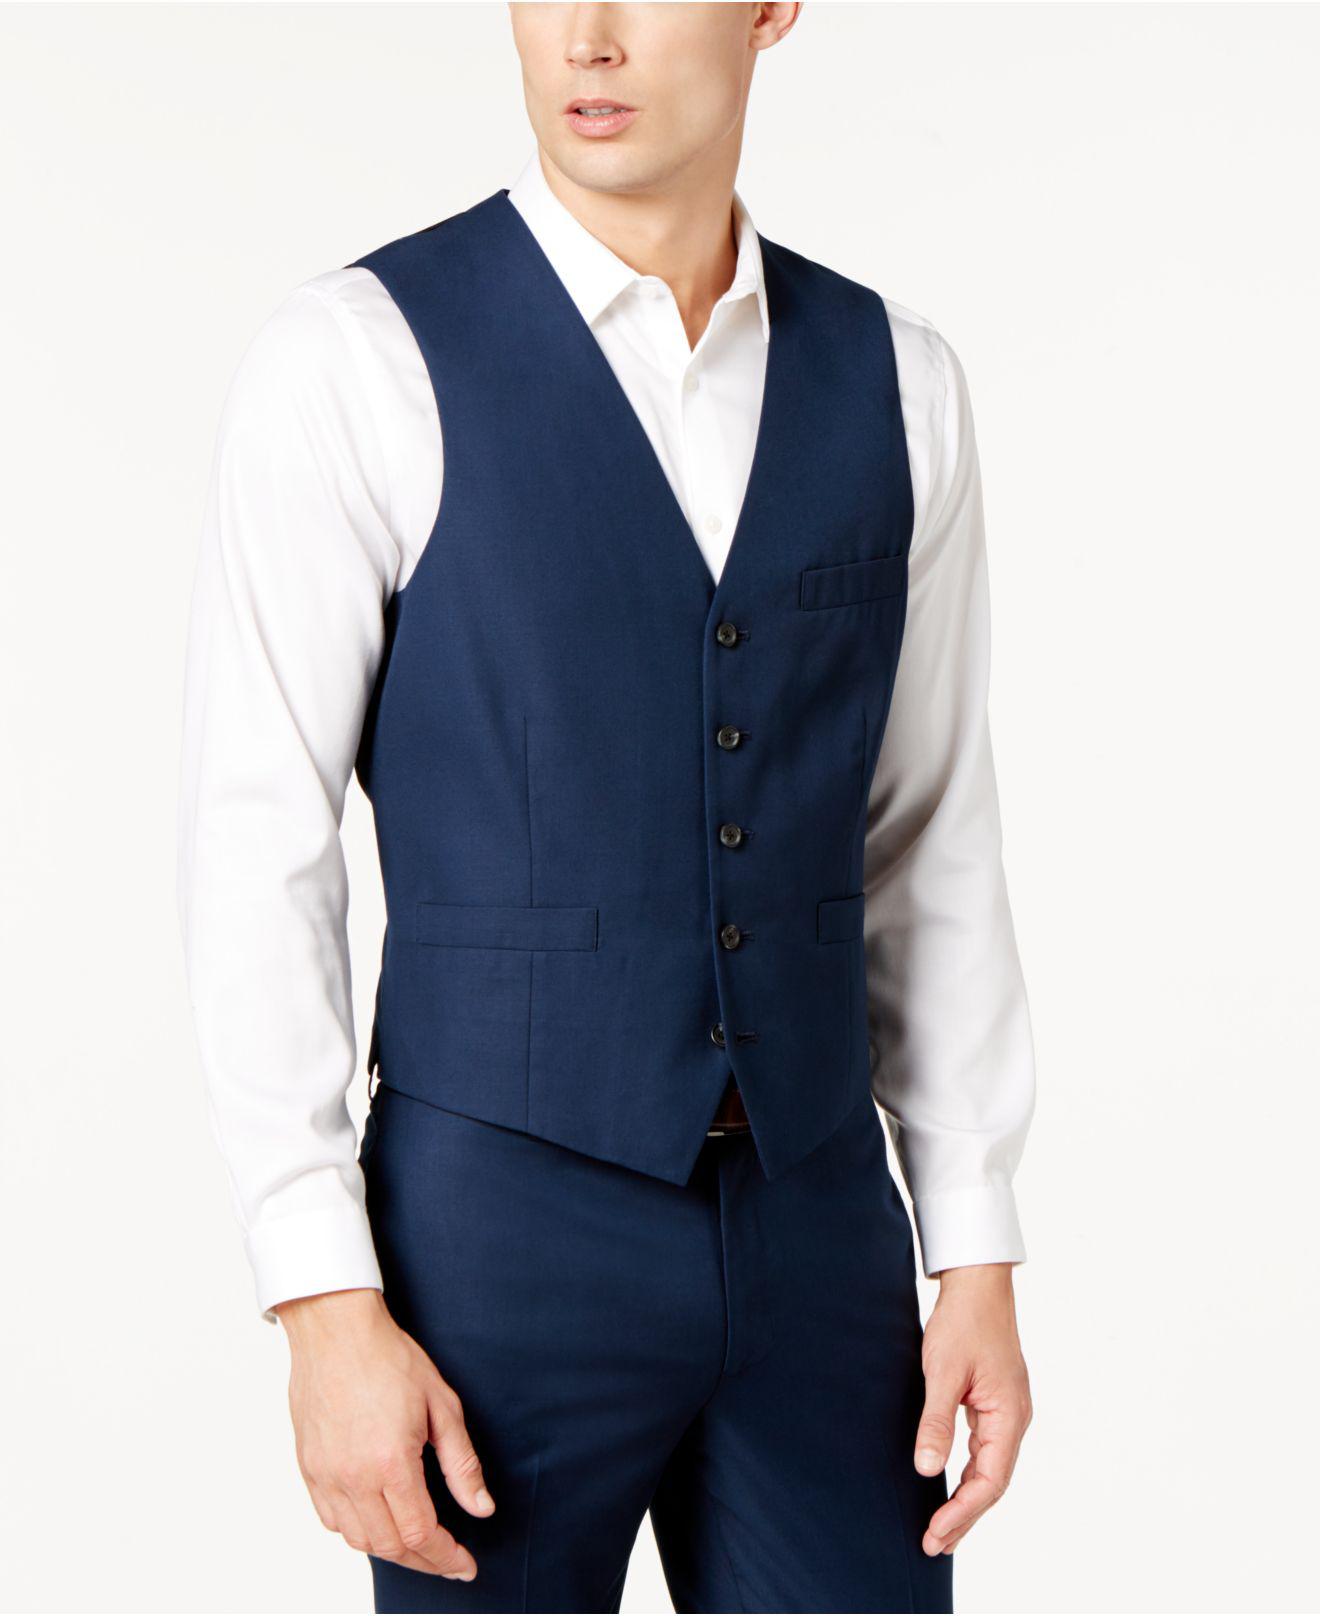 INC International Concepts Slim-fit V-neck Vest in Blue for Men - Lyst